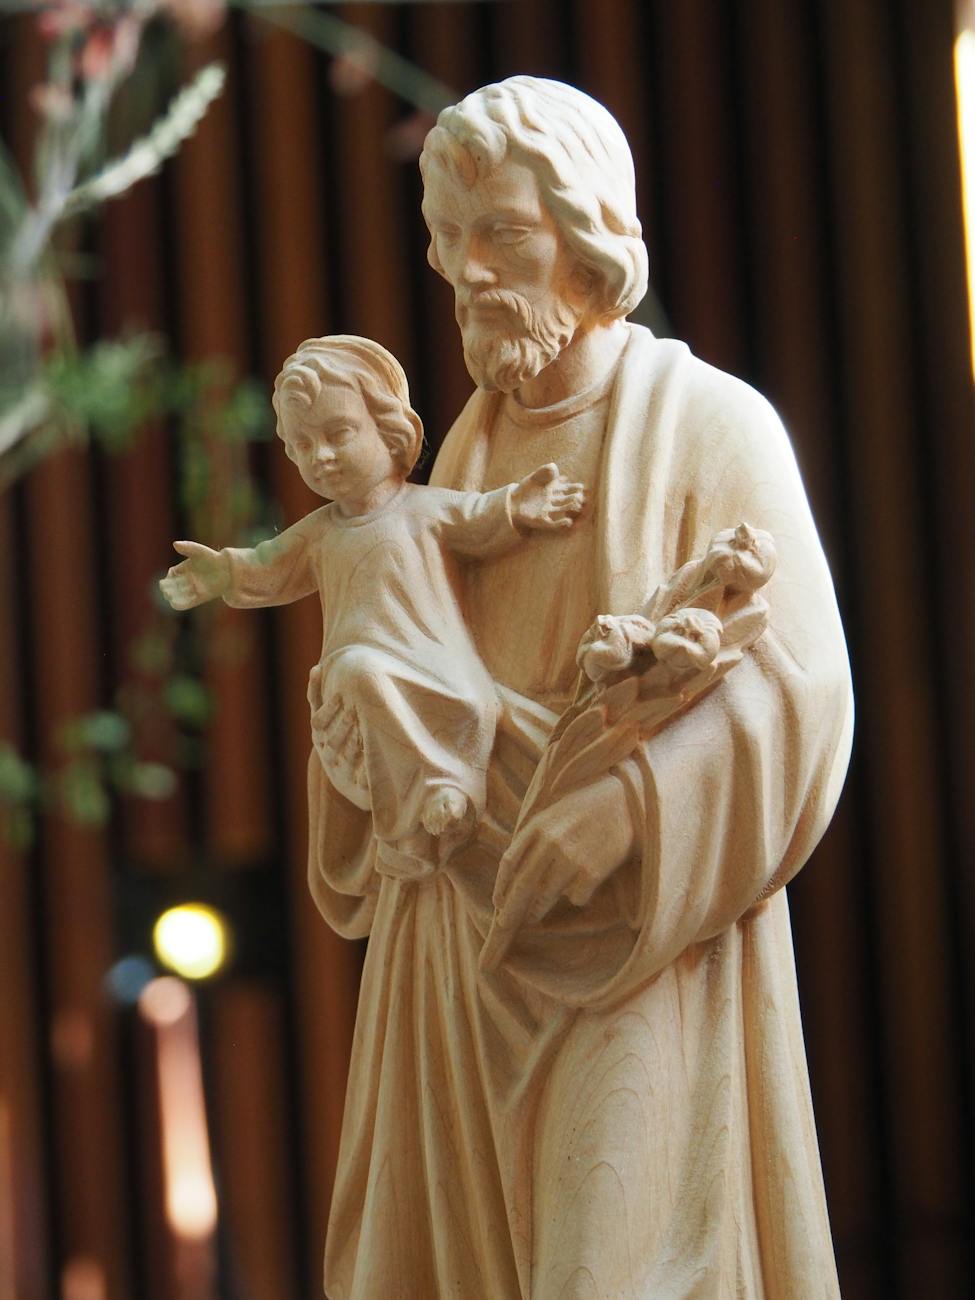 saint joseph and jesus christ statue
statuette de saint joseph avec jesus dans ses bras